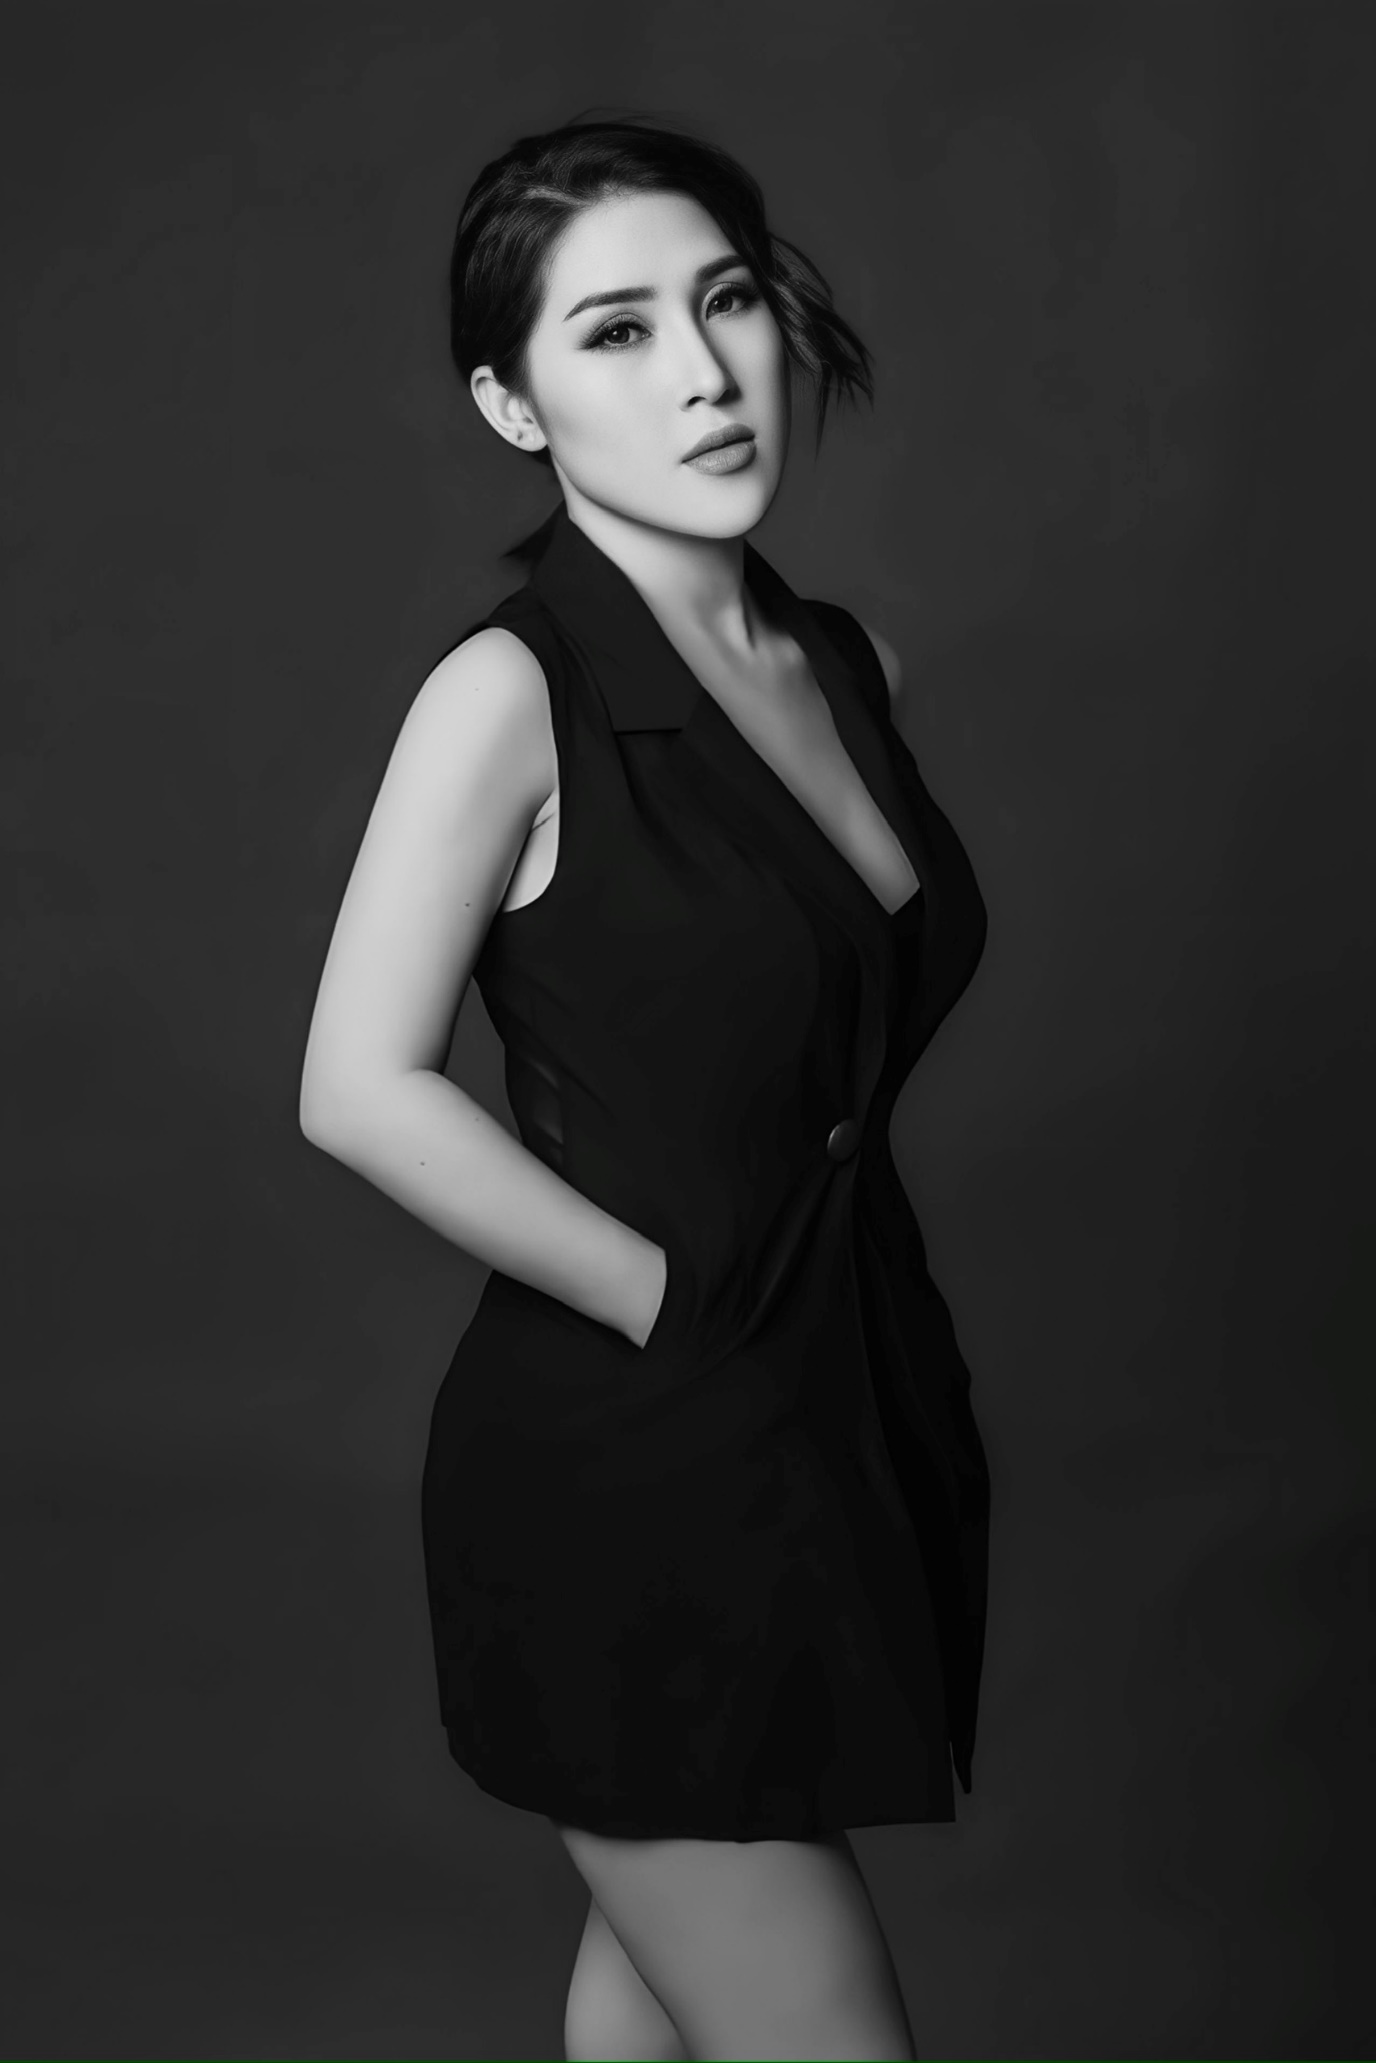 Người đẹp đến từ Đồng Tháp từng có thời gian dài làm người mẫu cho nhiều nhãn hàng thời trang tại Việt Nam và Hàn Quốc.